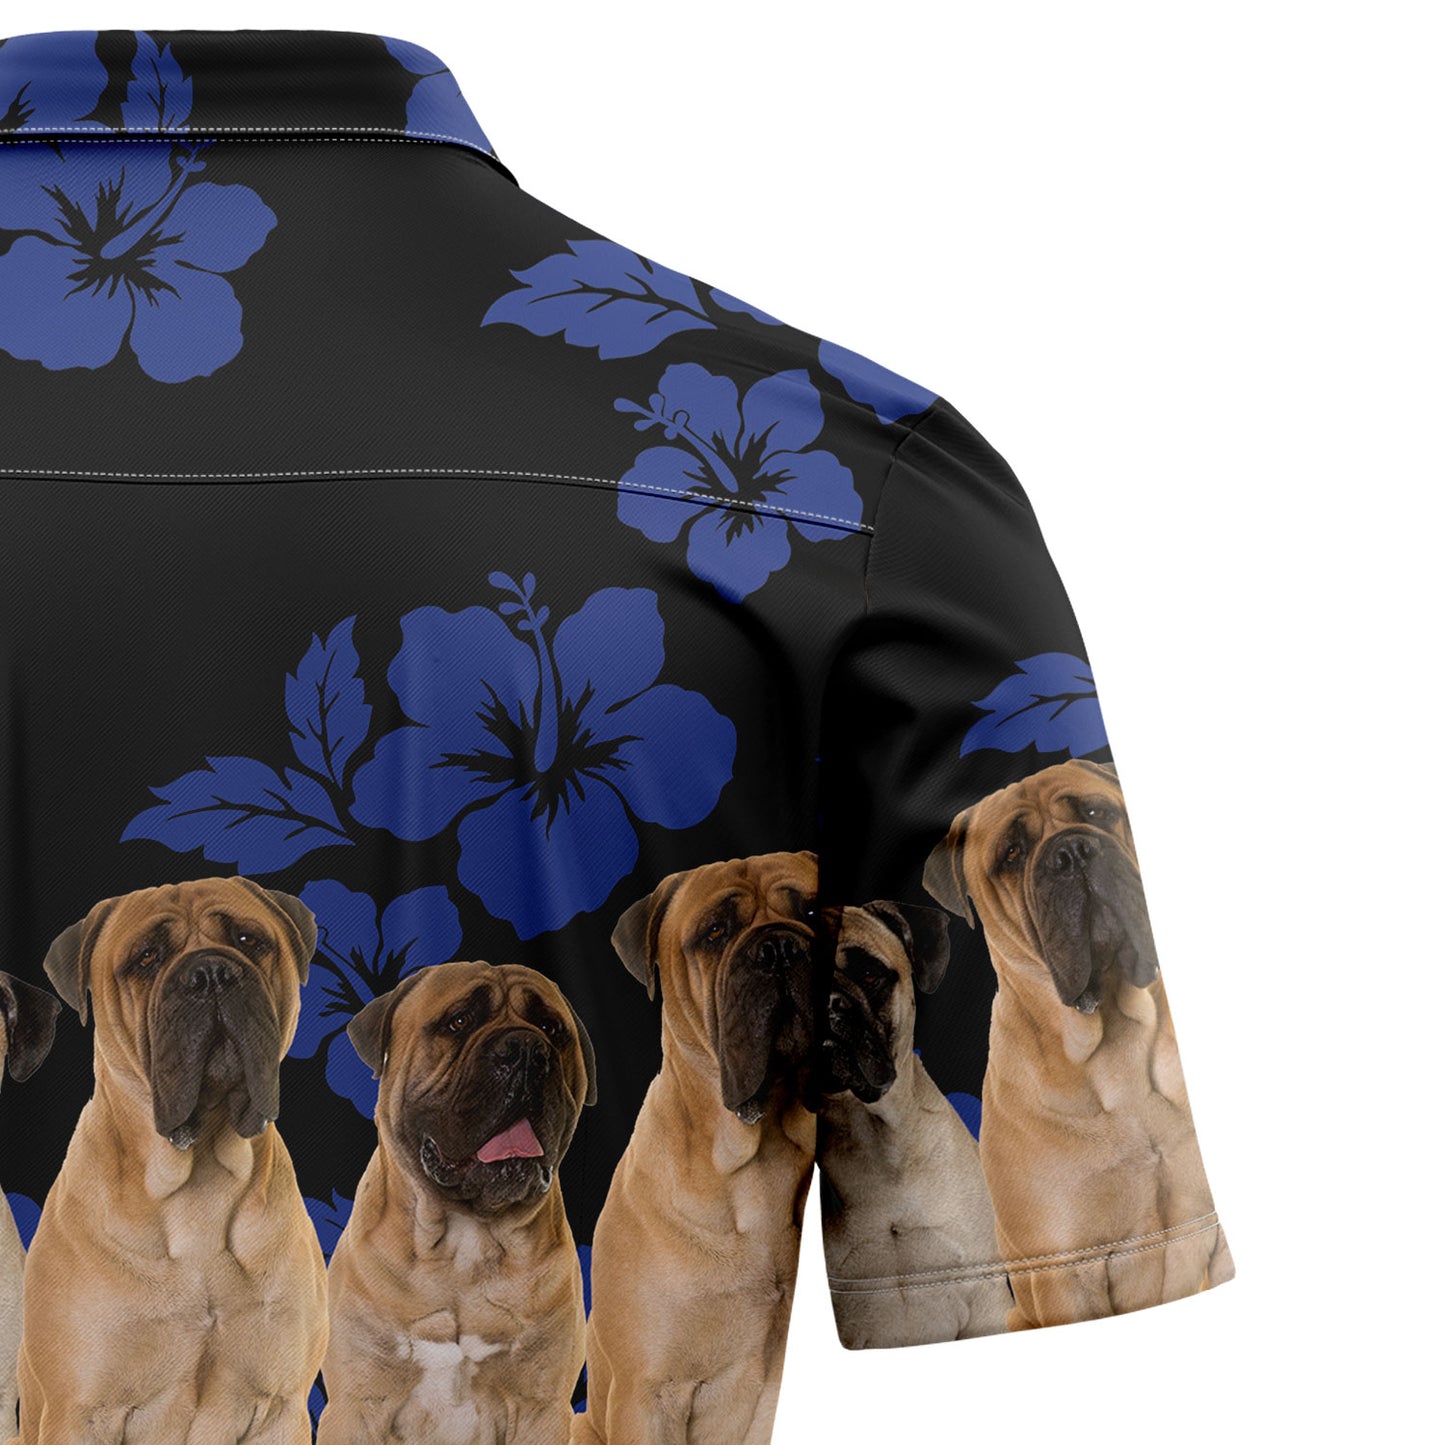 Awesome Bullmastiff TG5722 Hawaiian Shirt